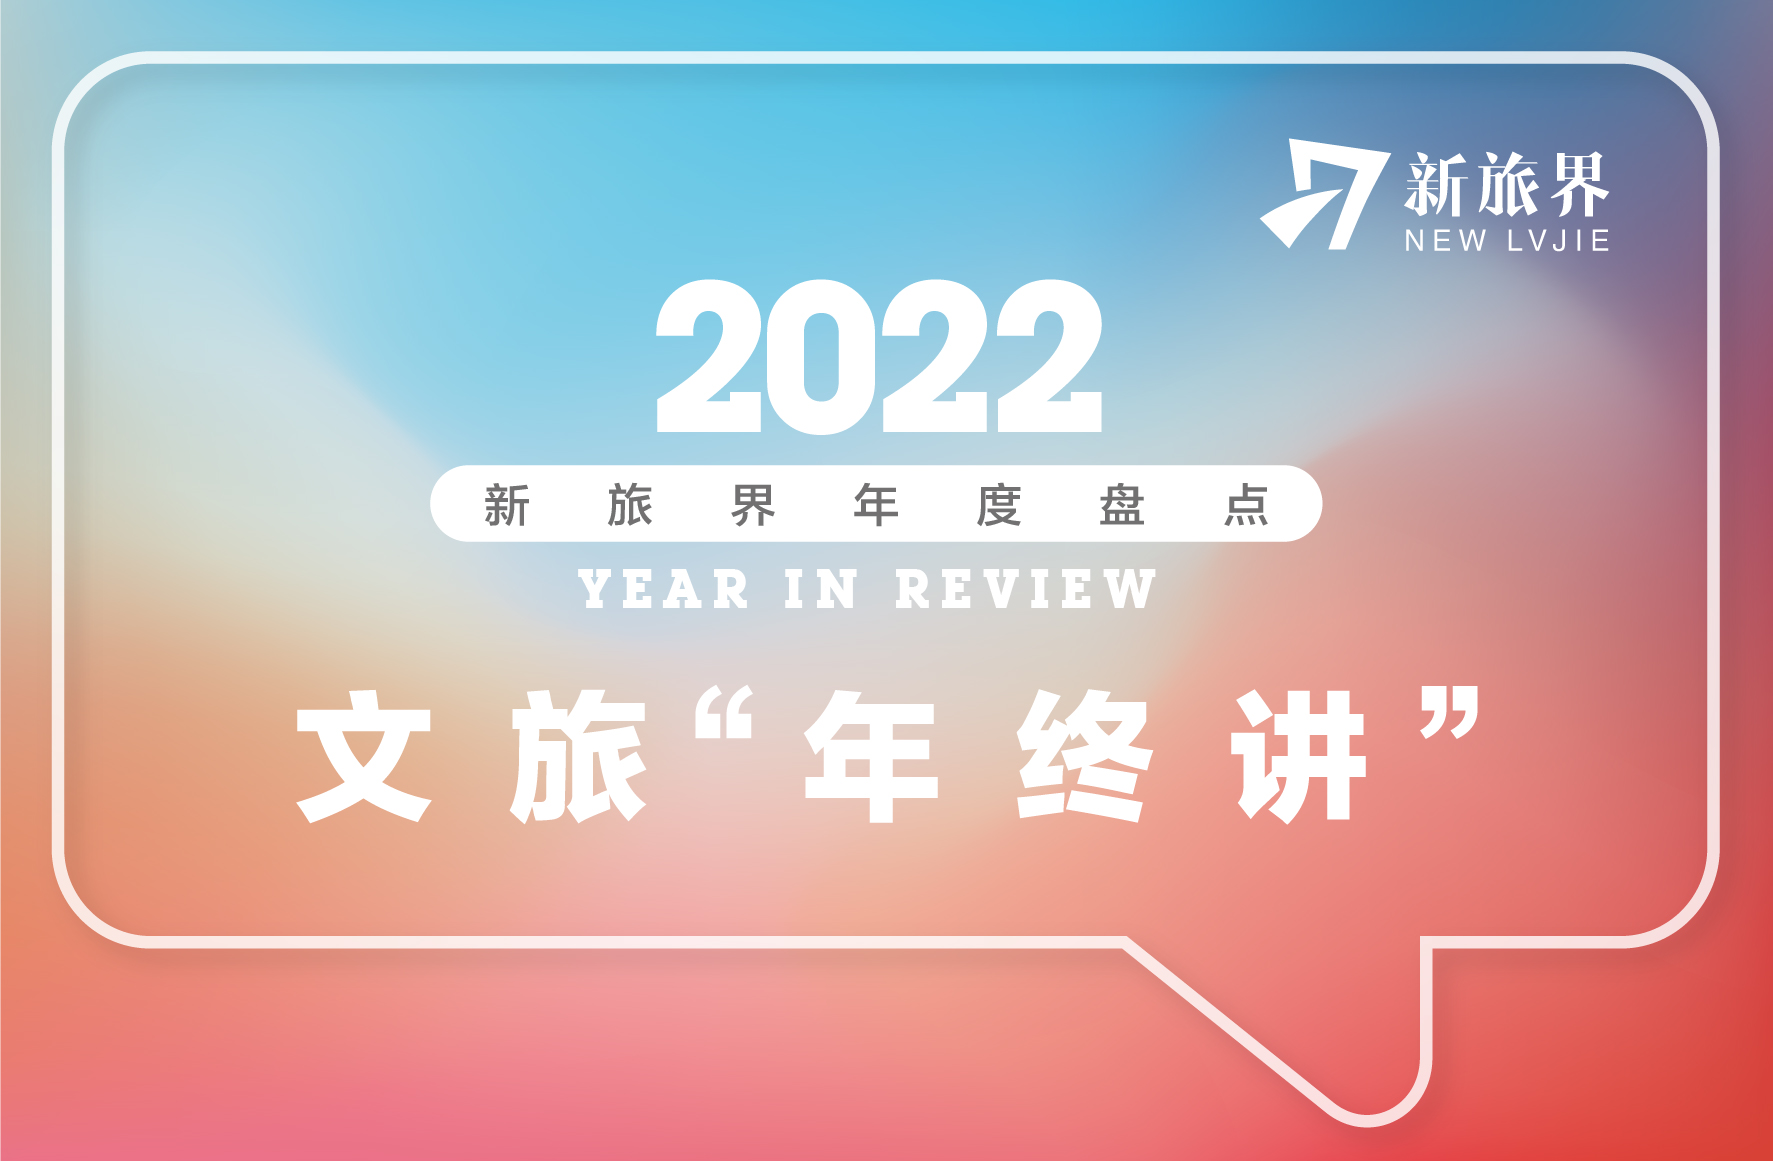 新旅界年度盘点 | 十五个大事件回顾文旅行业的2022